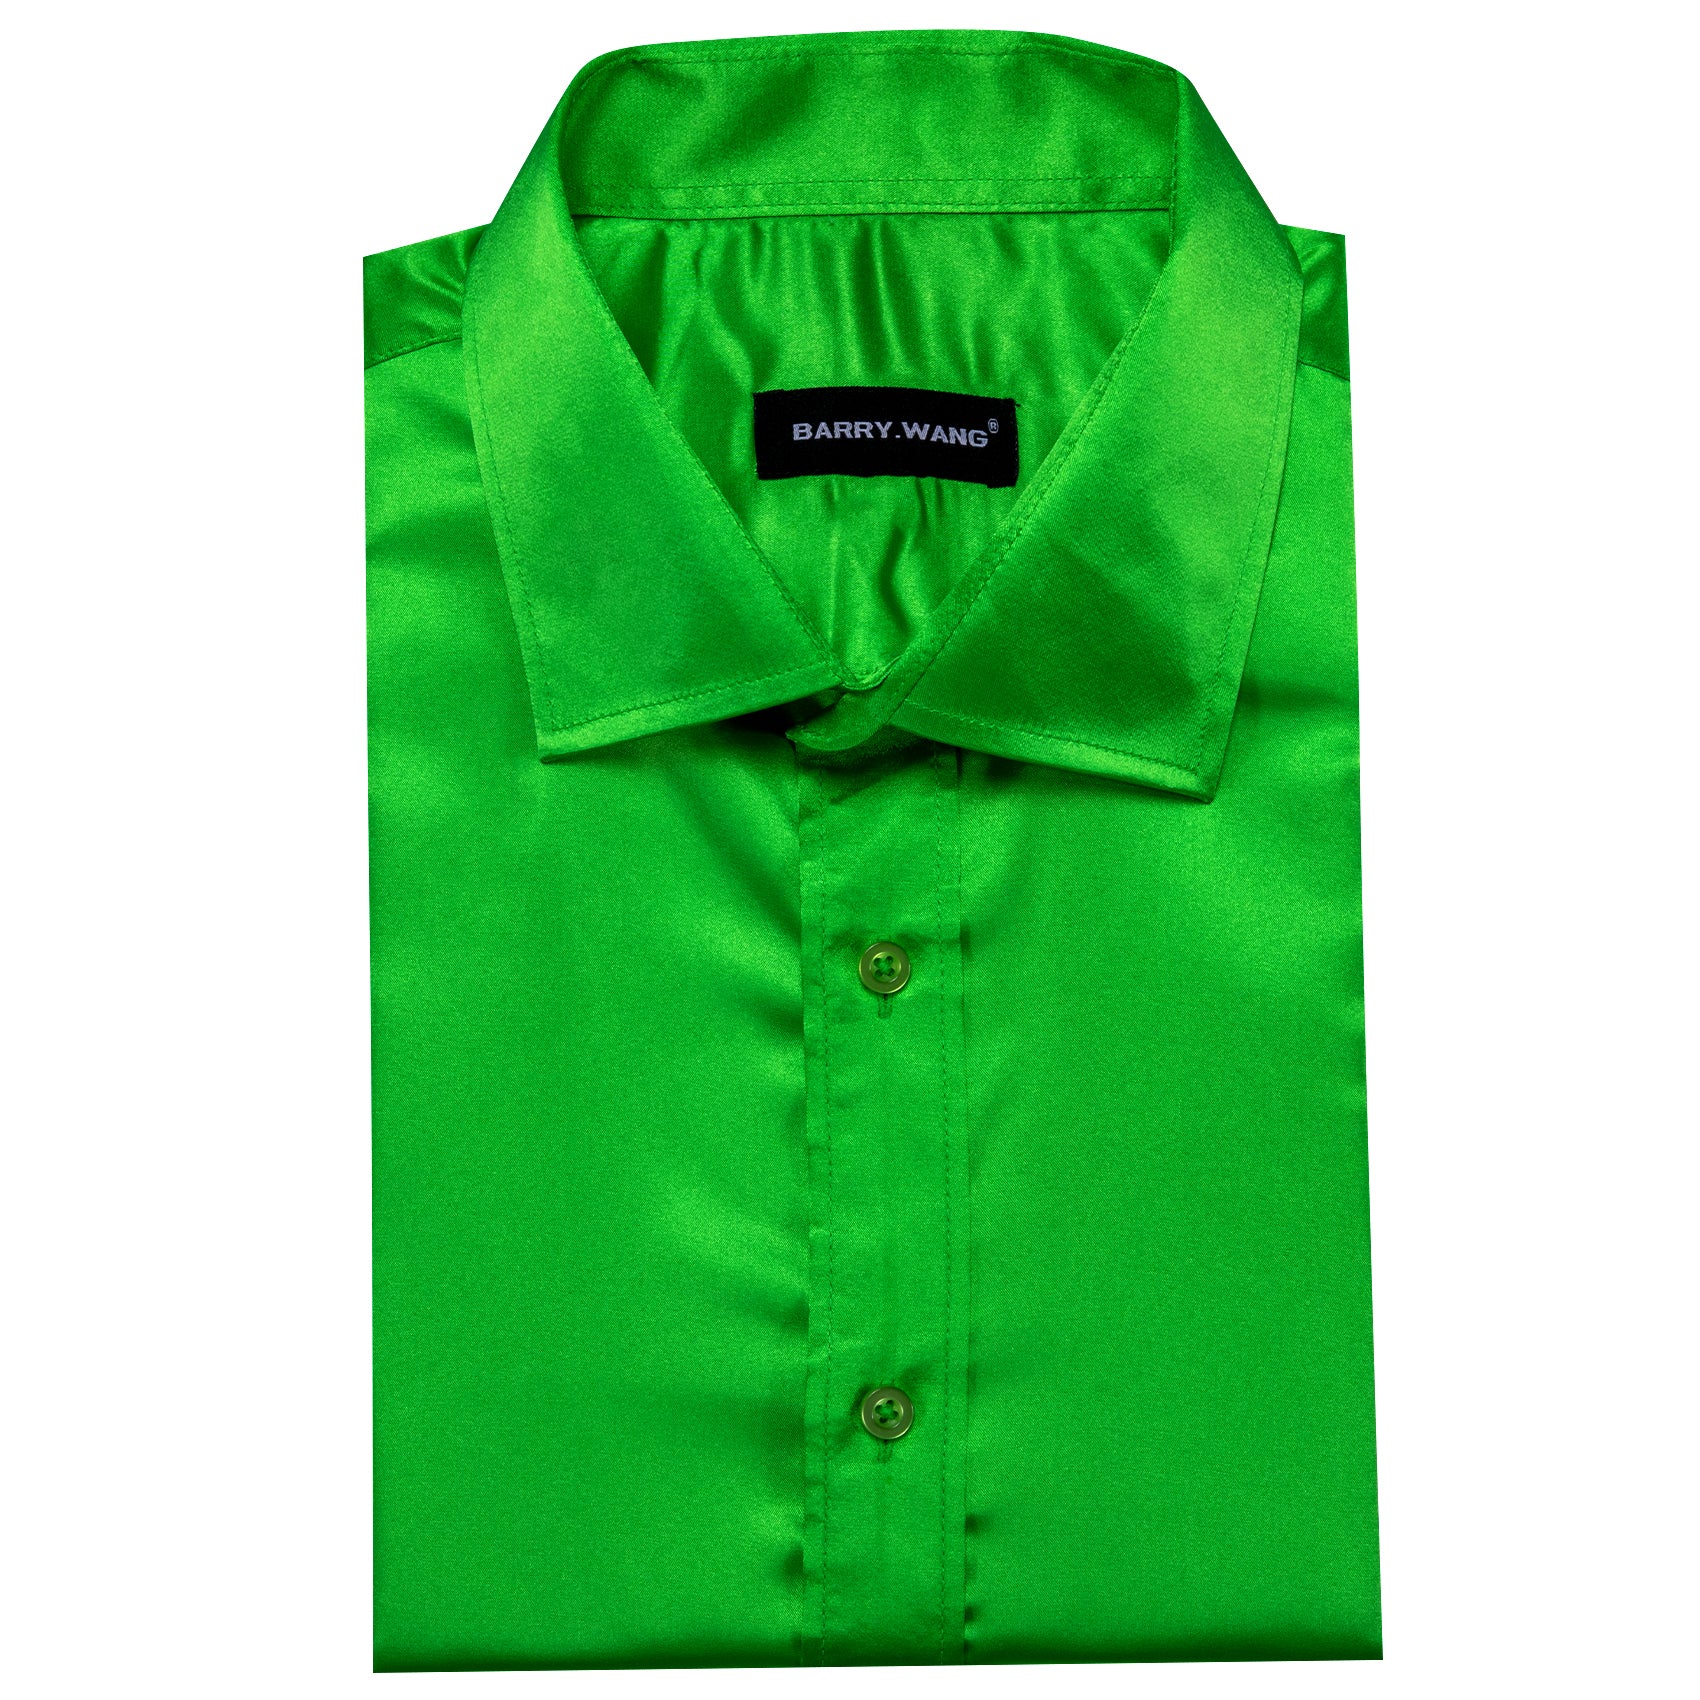 Barry.wang Green Solid Silk Shirt